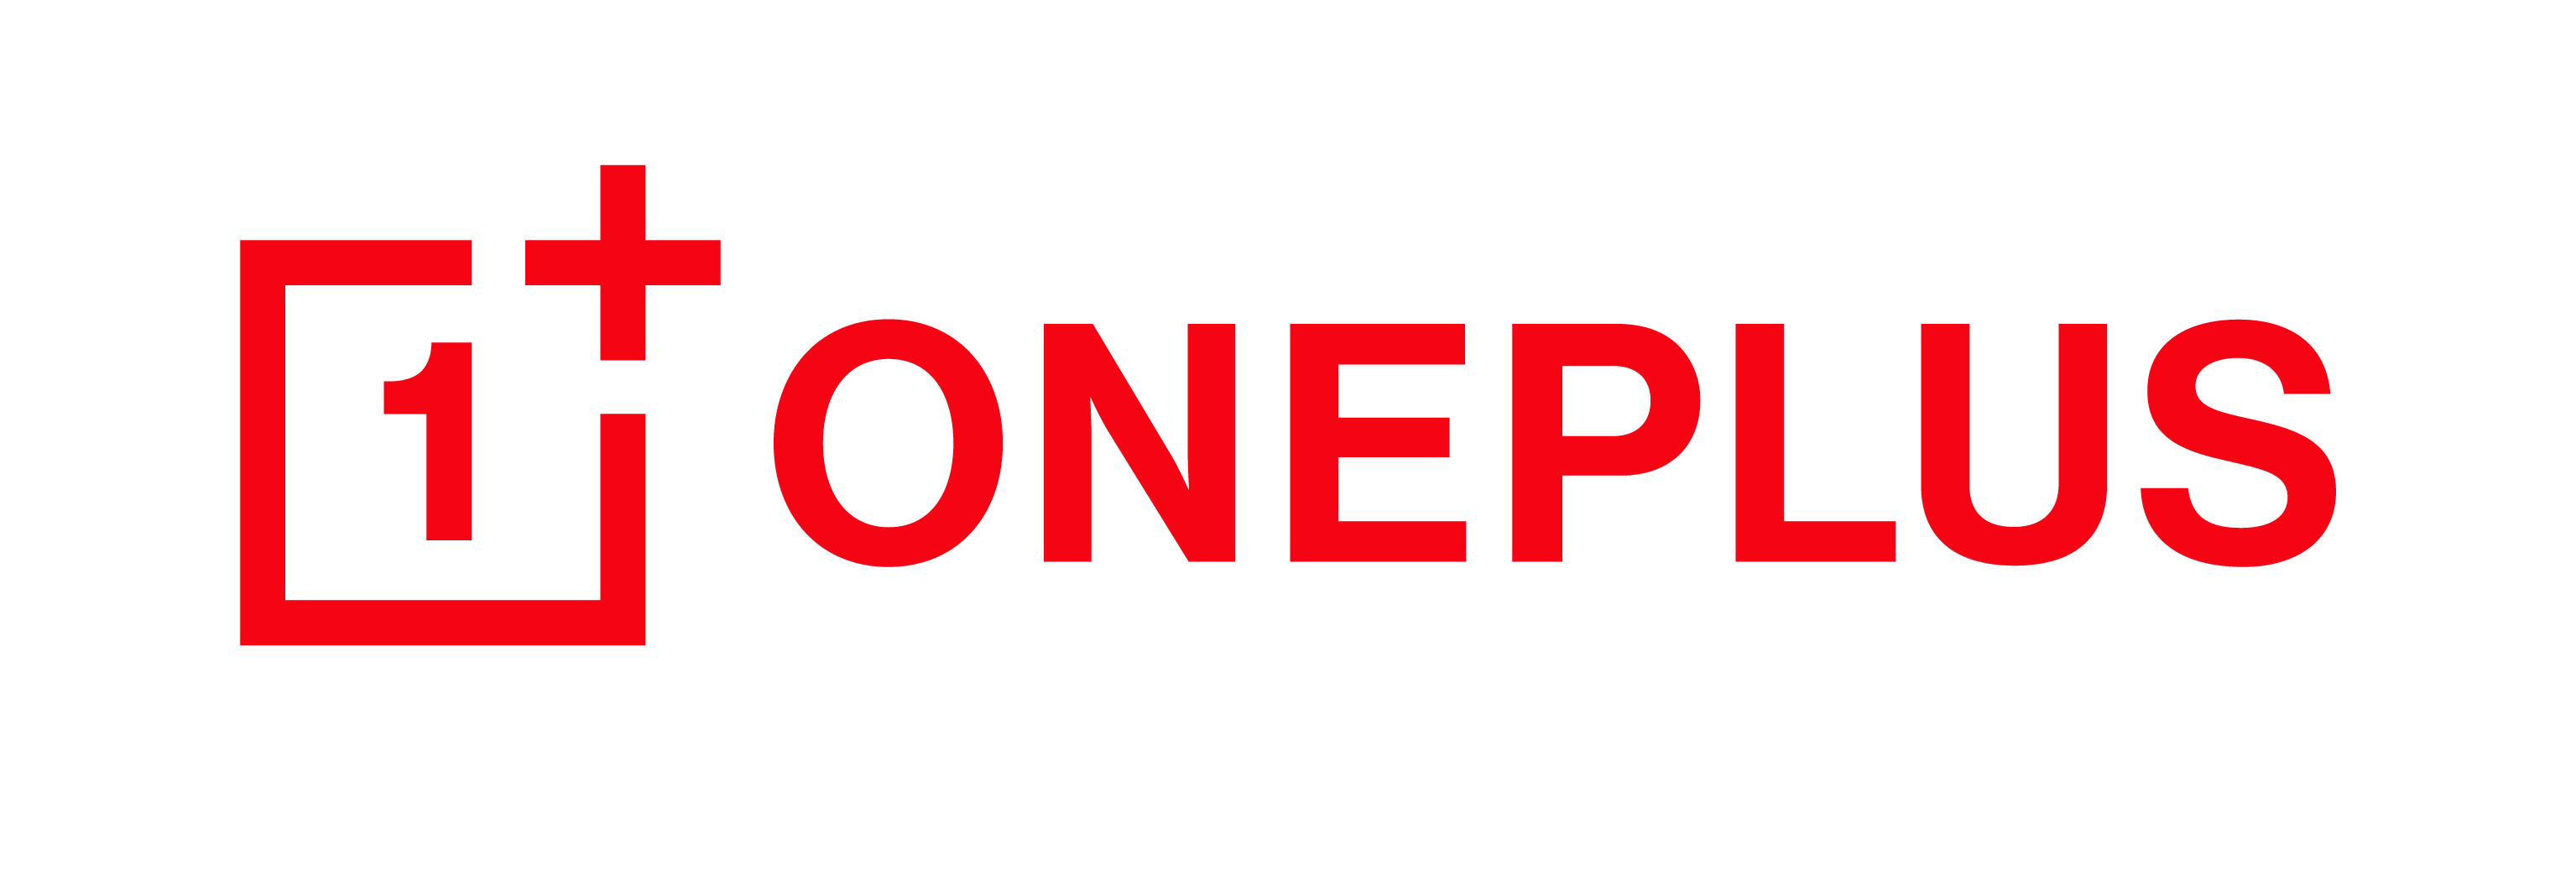 oneplus-logo.png